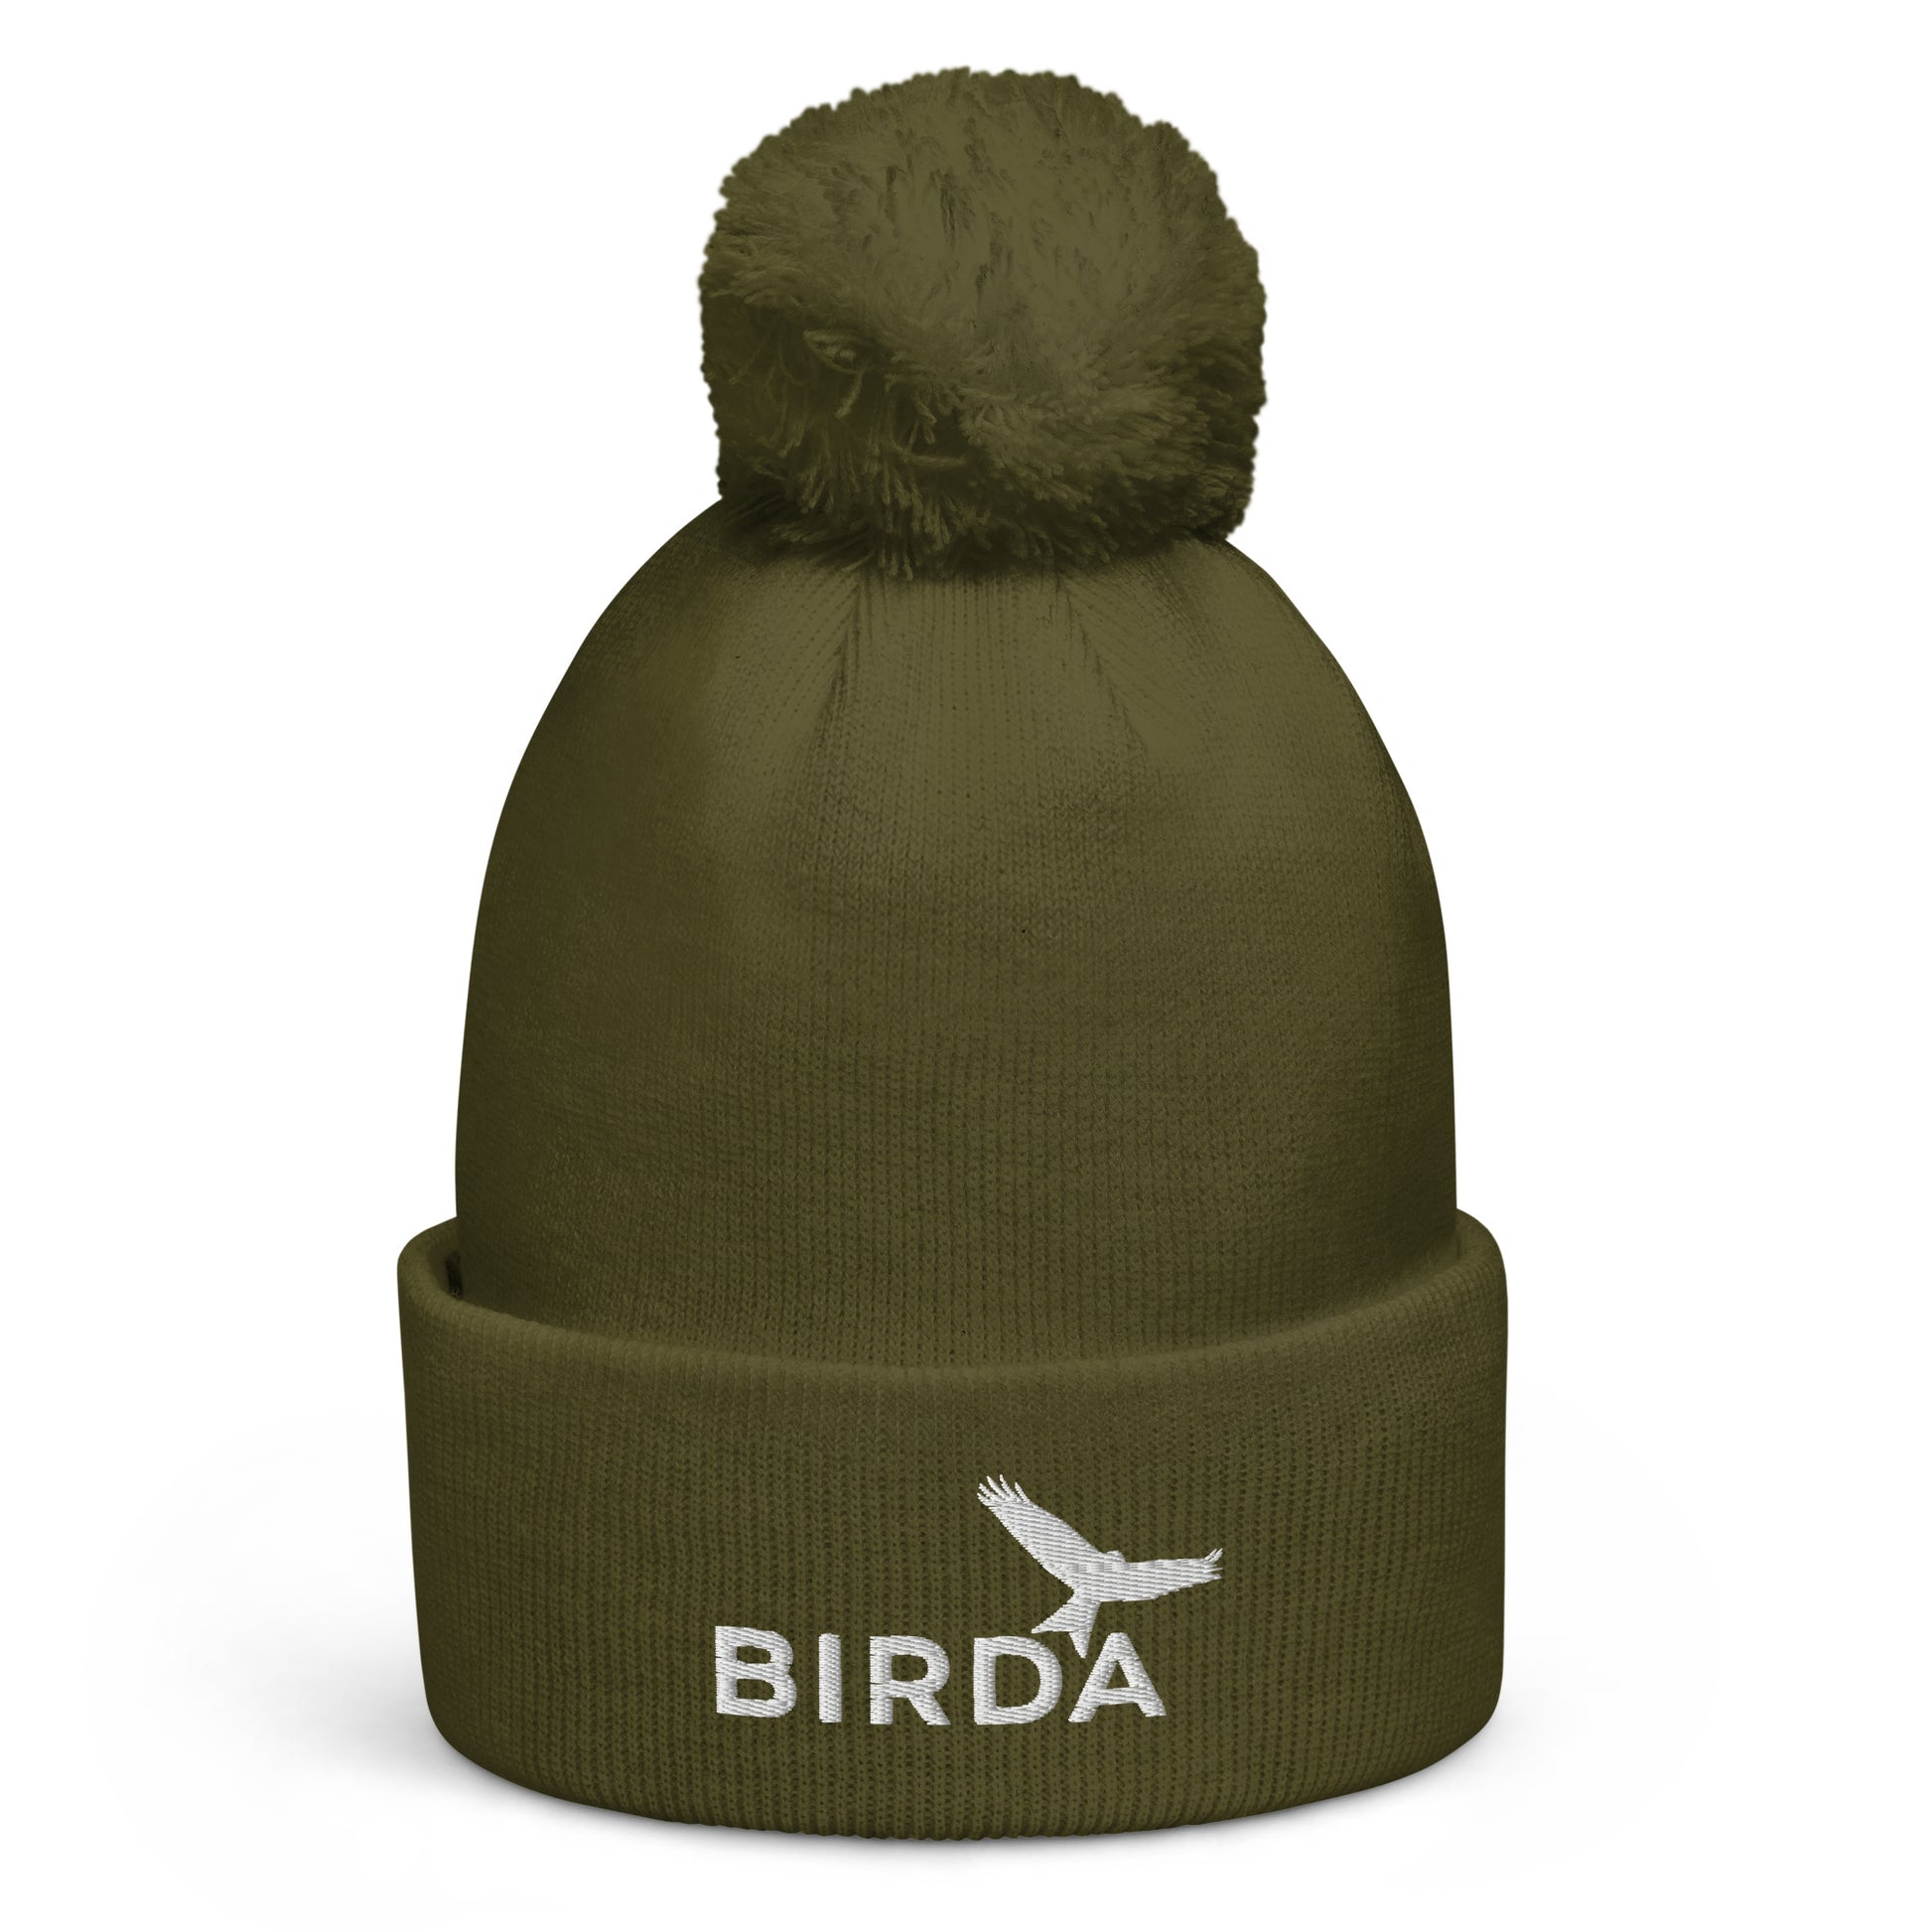 Birda Bird Cuffed Pom-Pom beanie in moss green